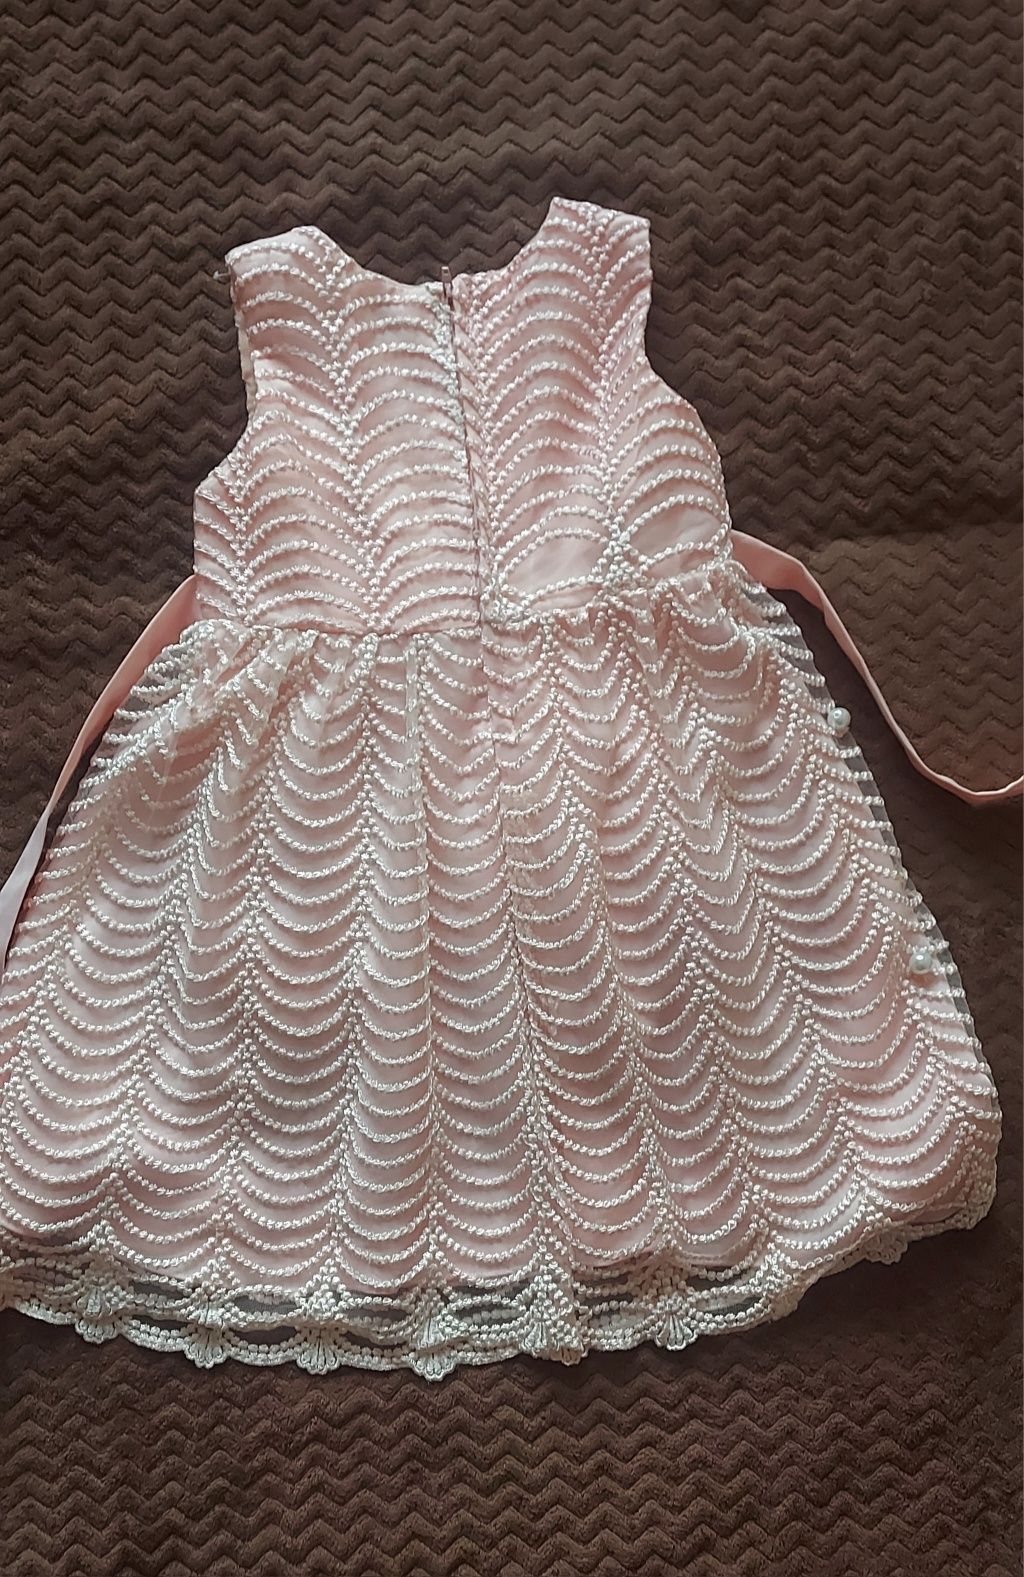 Плаття (сукня) для дівчинки